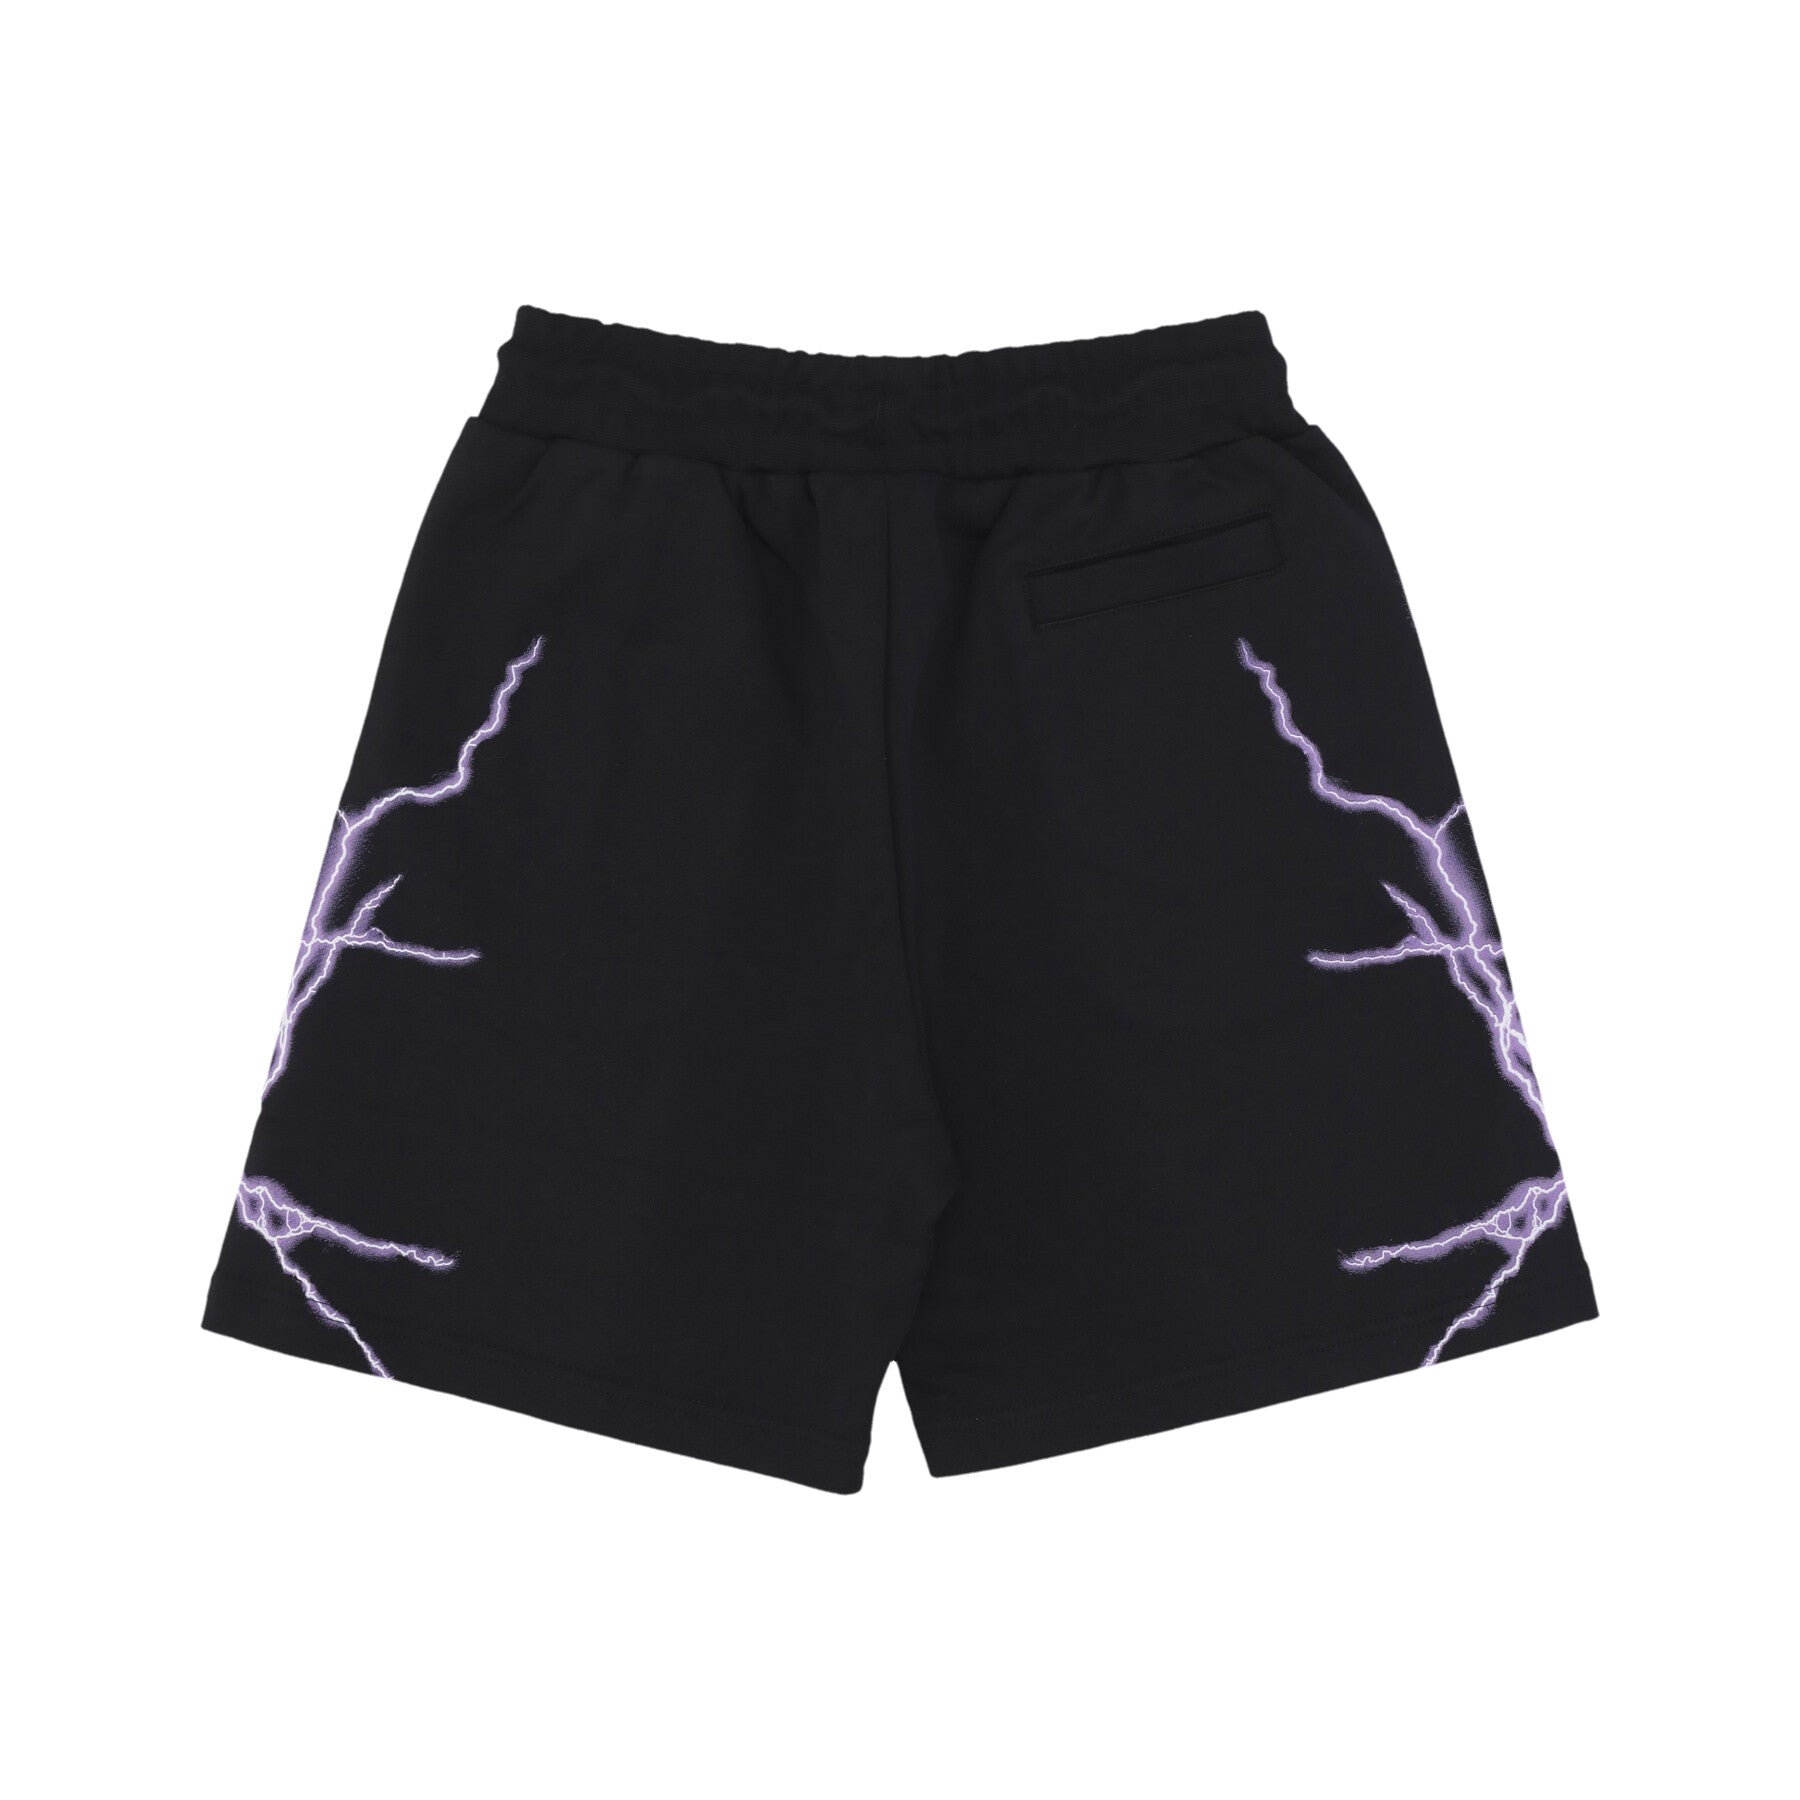 Pantalone Tuta Leggero Uomo Lateral Lightning Print Shorts Black/purple PH00566